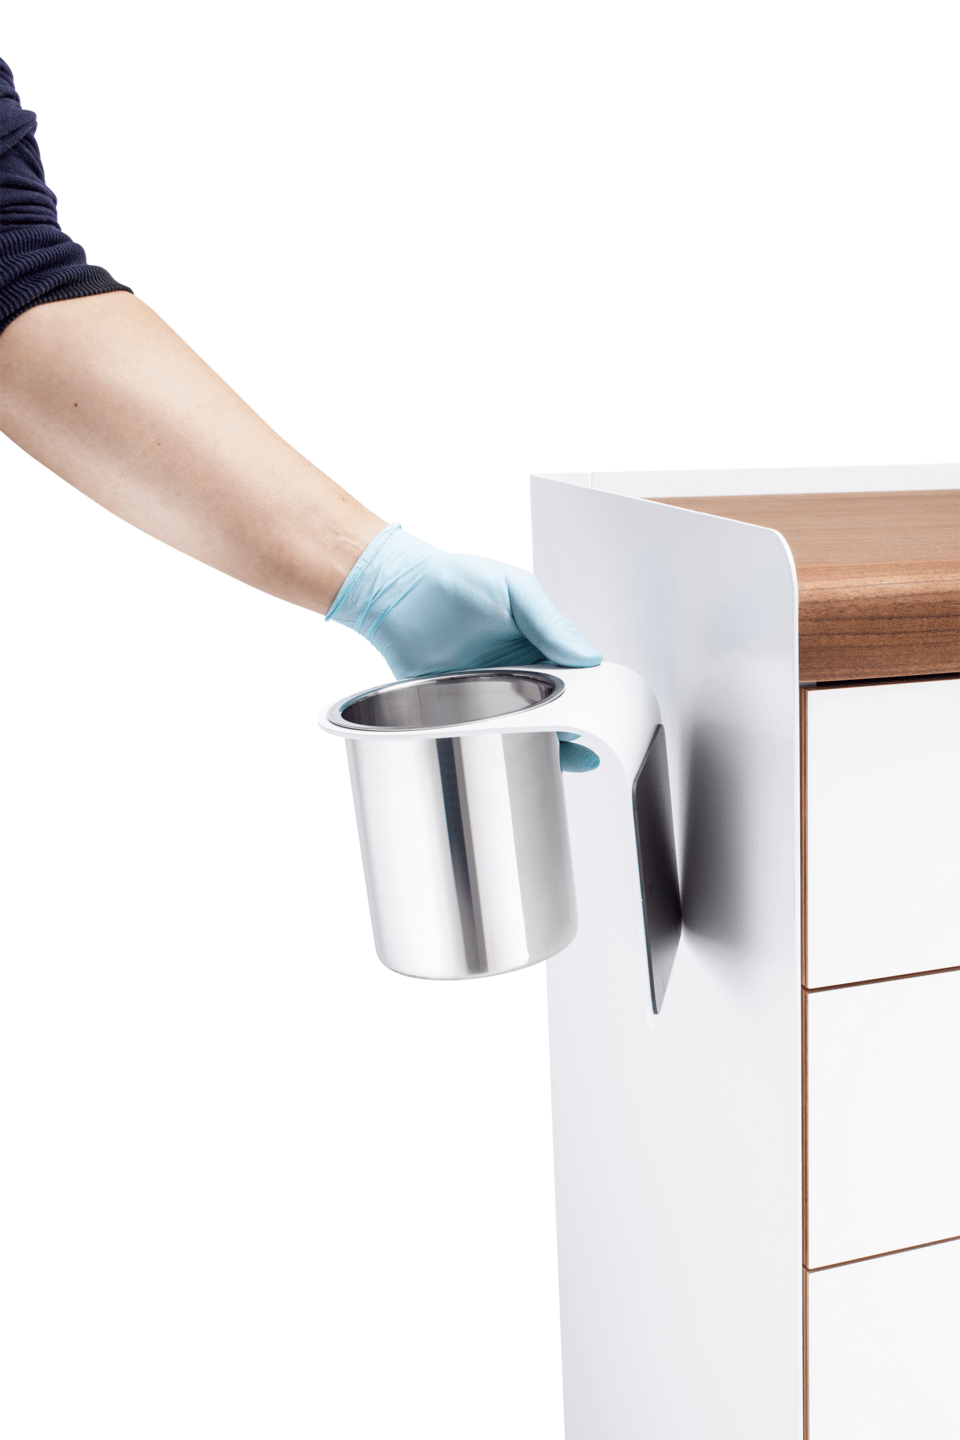 RUCK - Magnet-Abwurfbehälter für RUCK® ROOM Möbel in silber